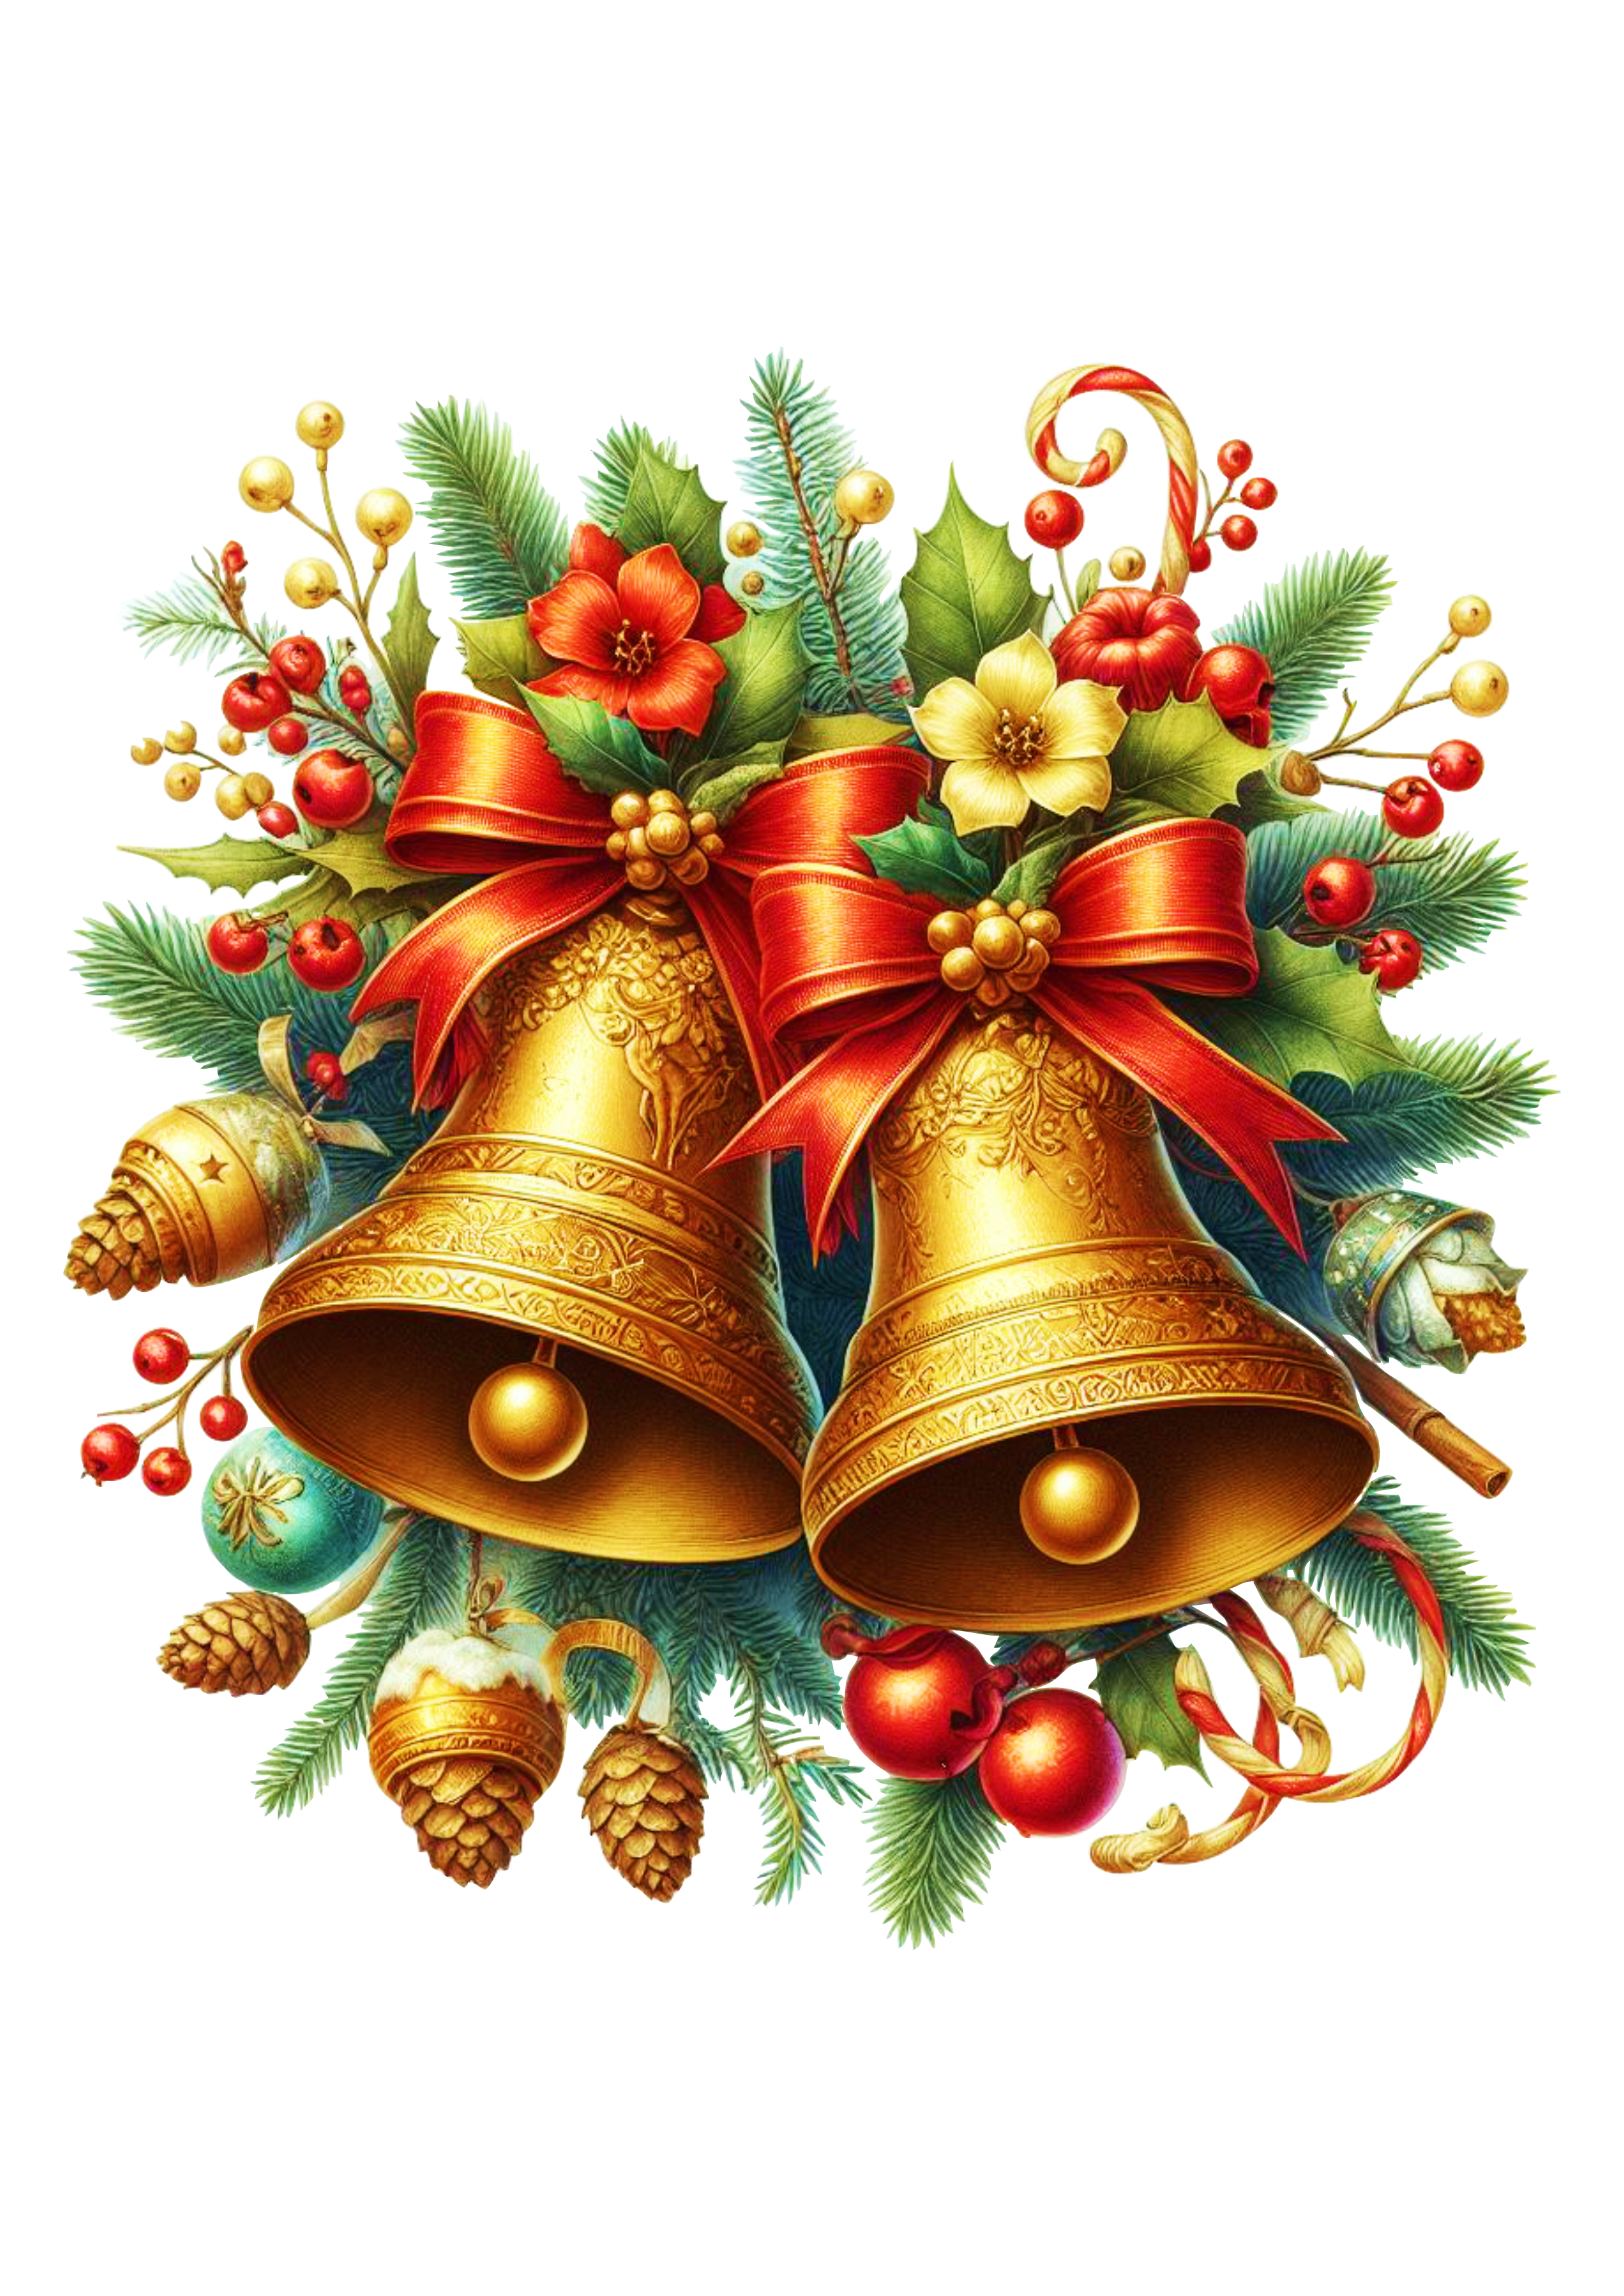 Sinos dourados de natal jingle bell realista com lacinhos vermelhos e flores png